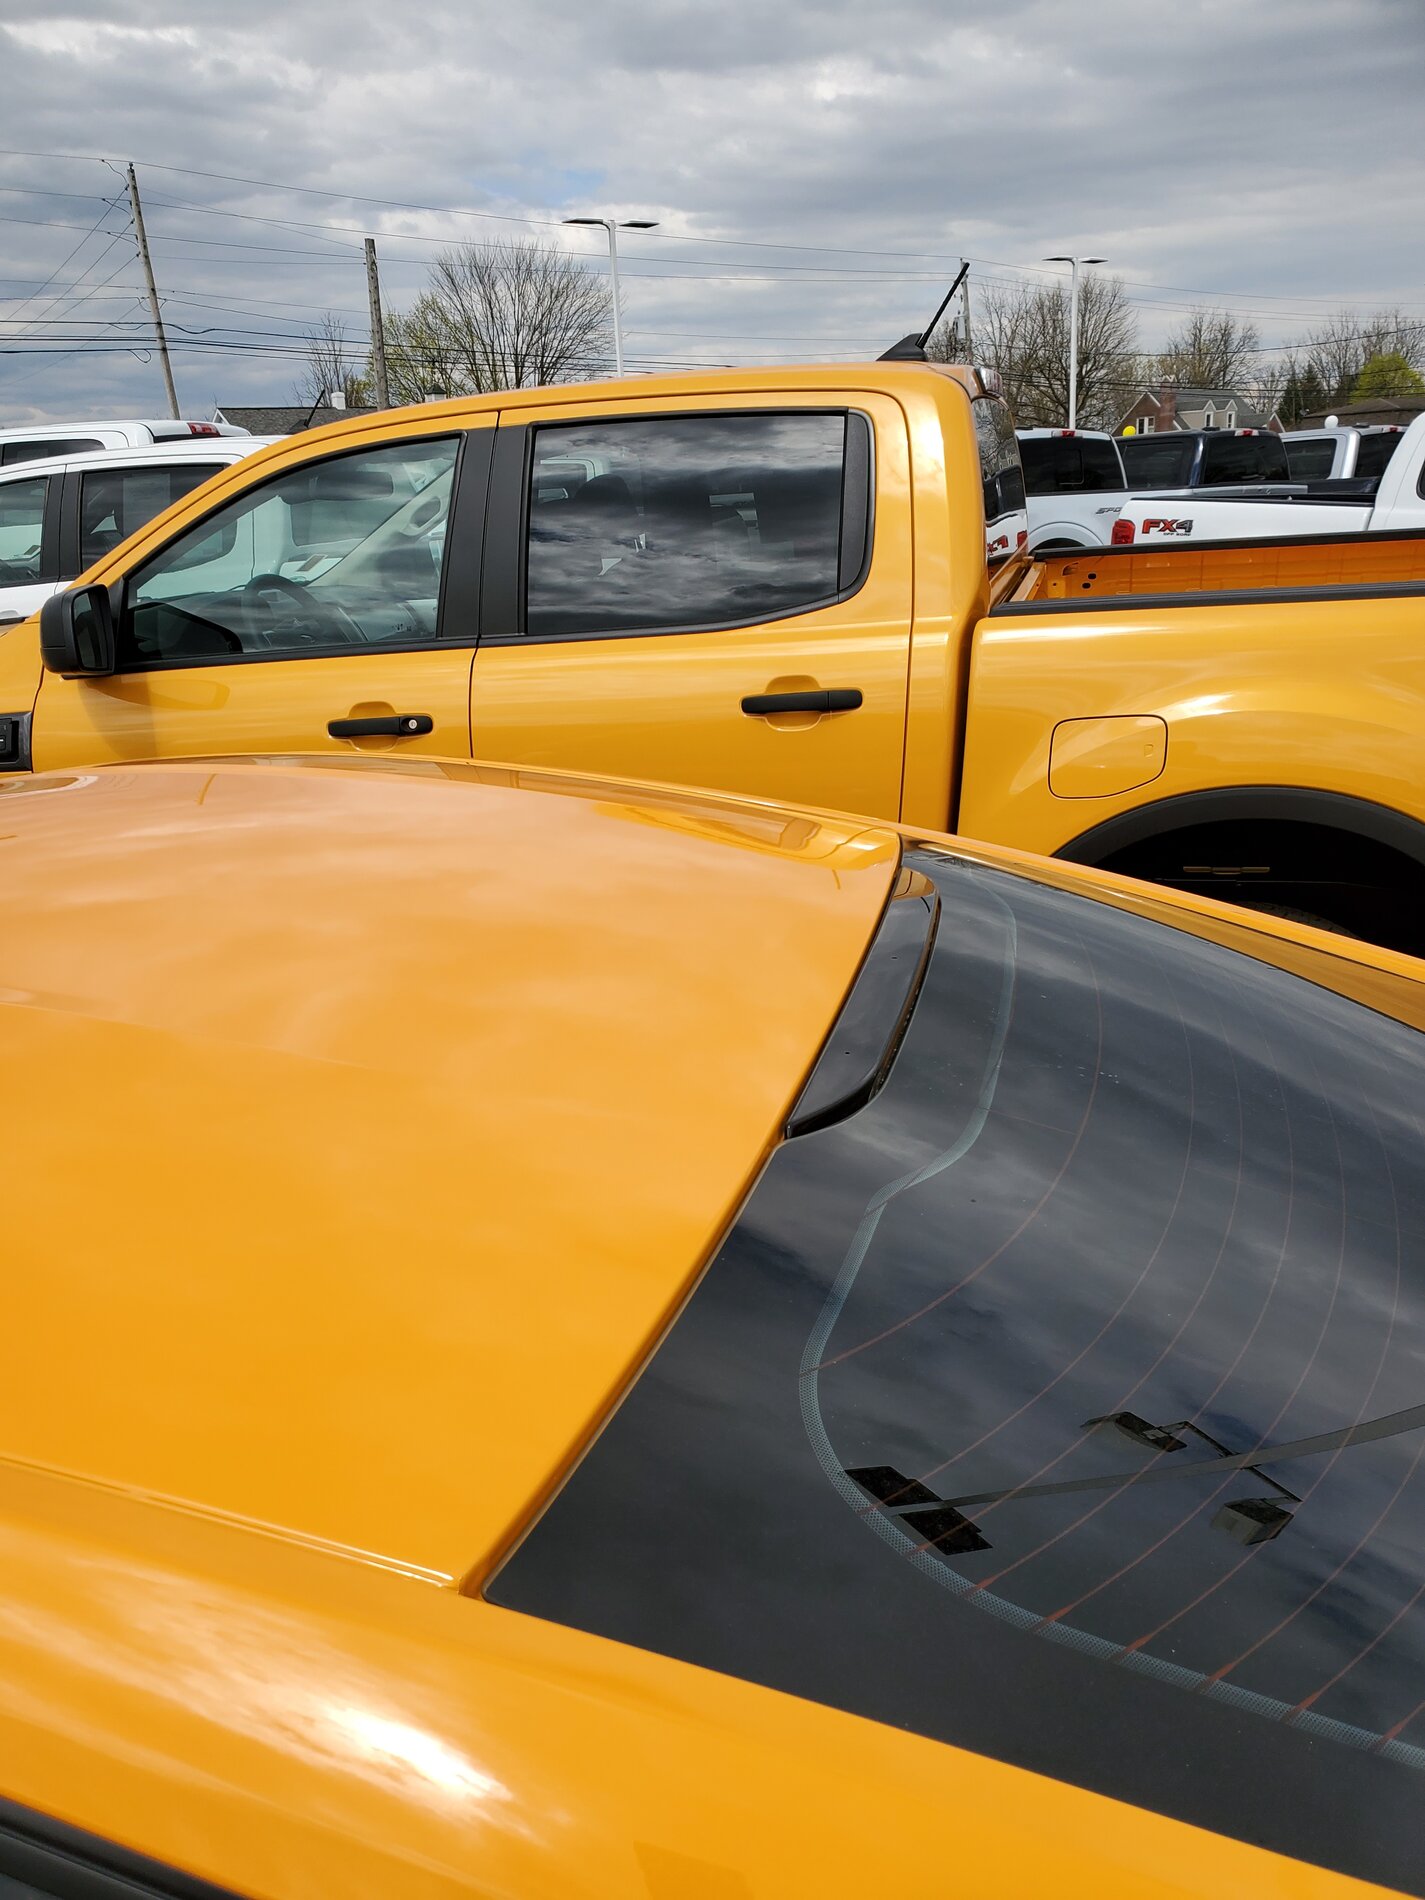 Ford Bronco Cyber Orange in person comparison. 20210415_144904